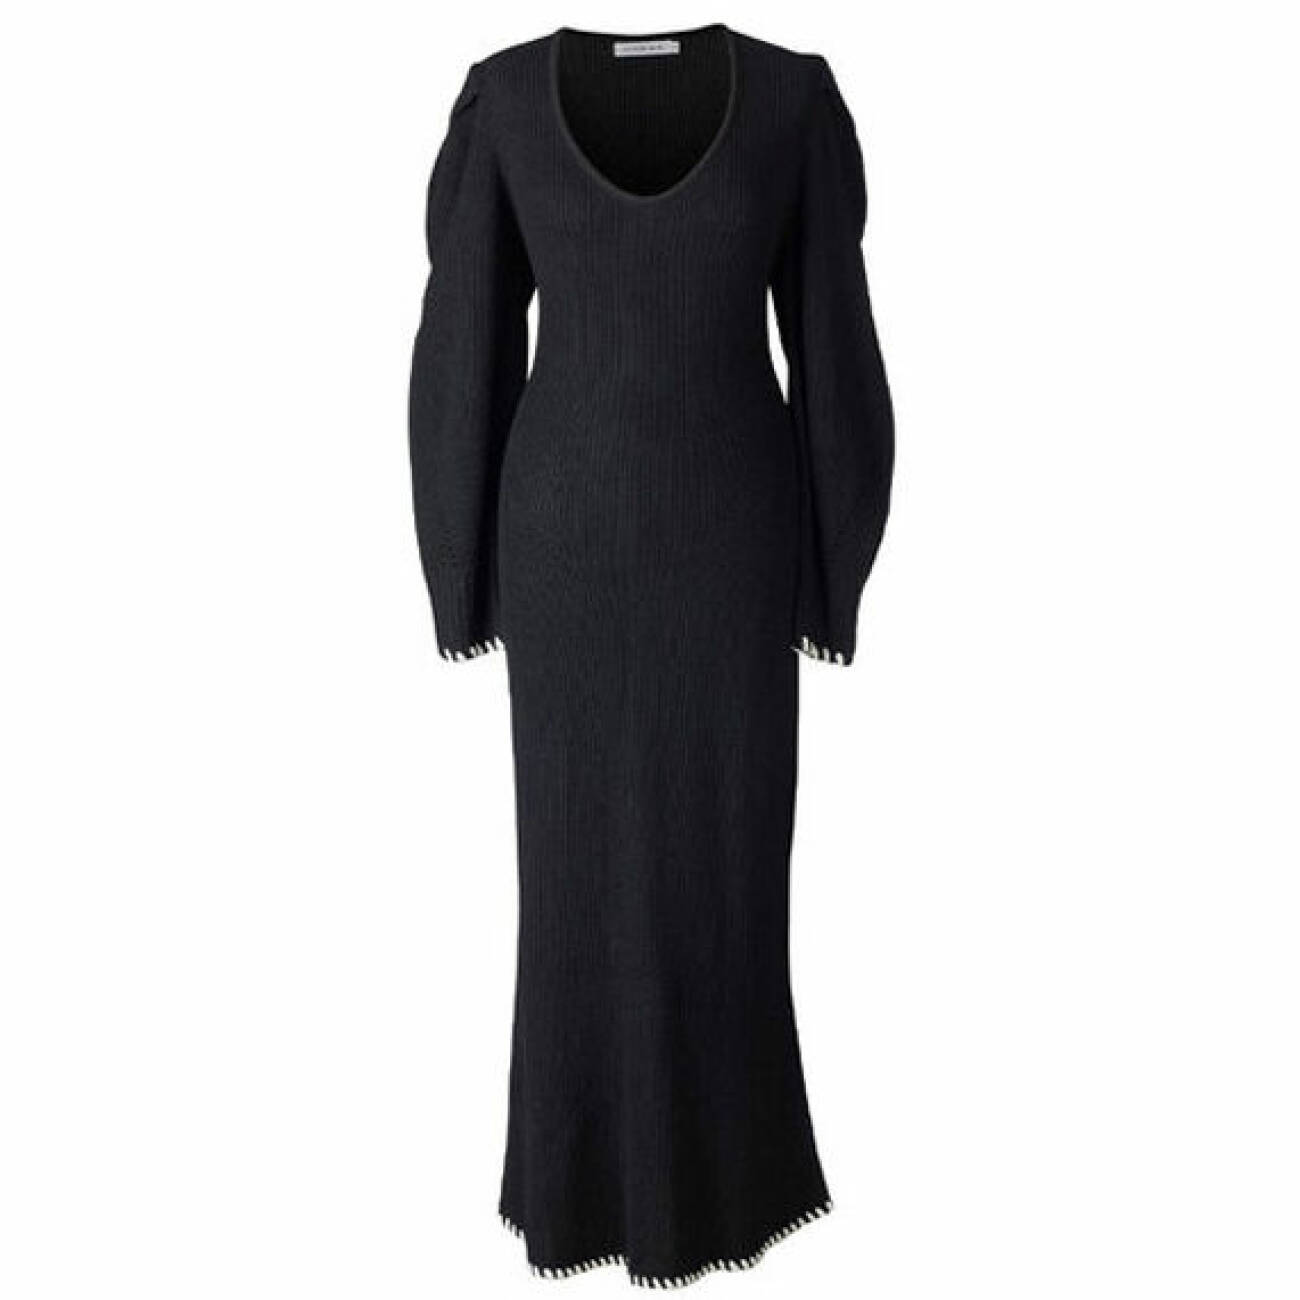 svart stickad klänning från Adoore